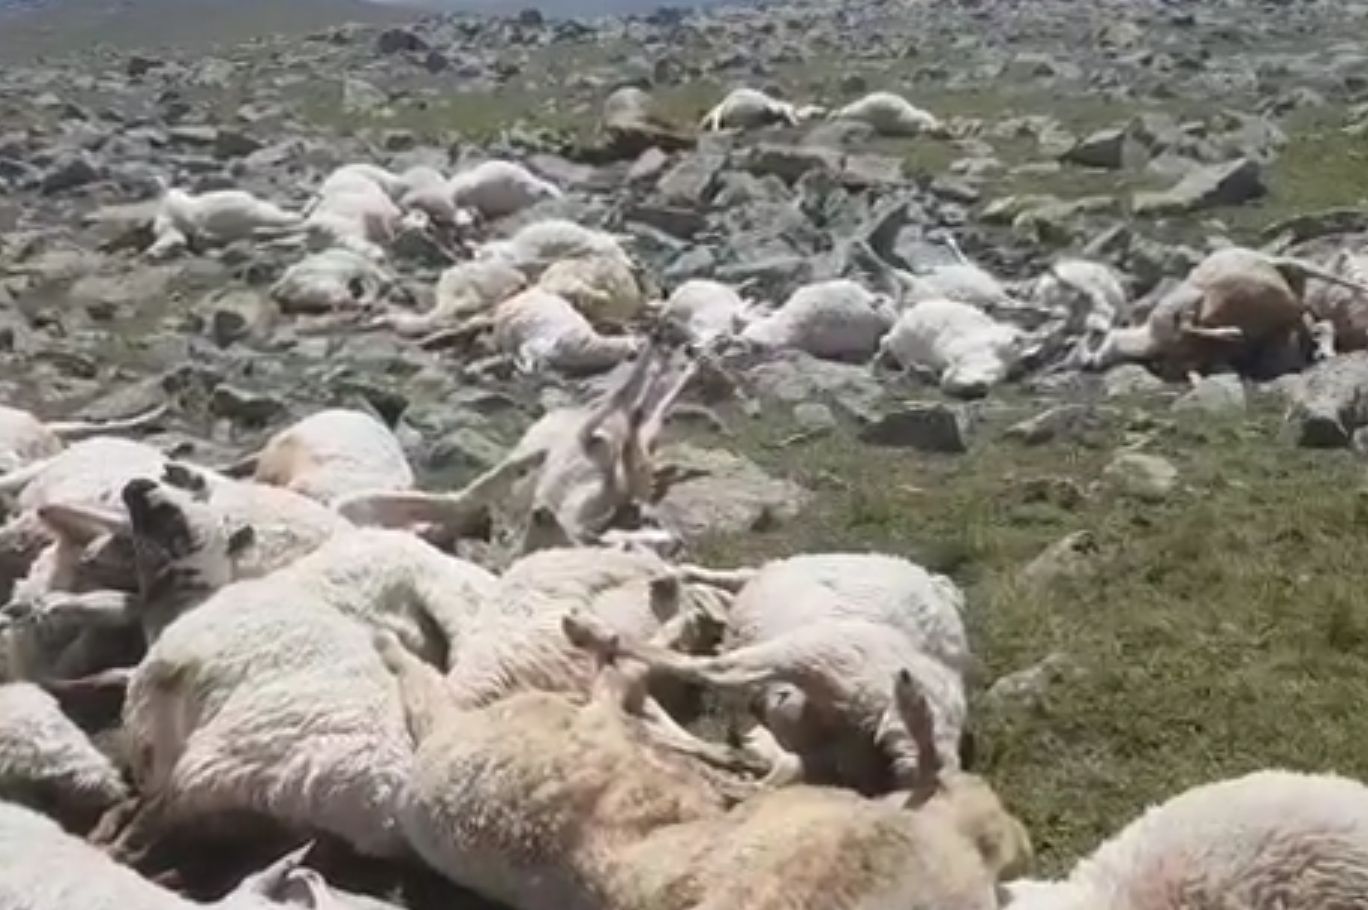 Makabra w górach. Piorun zabił ponad 500 owiec